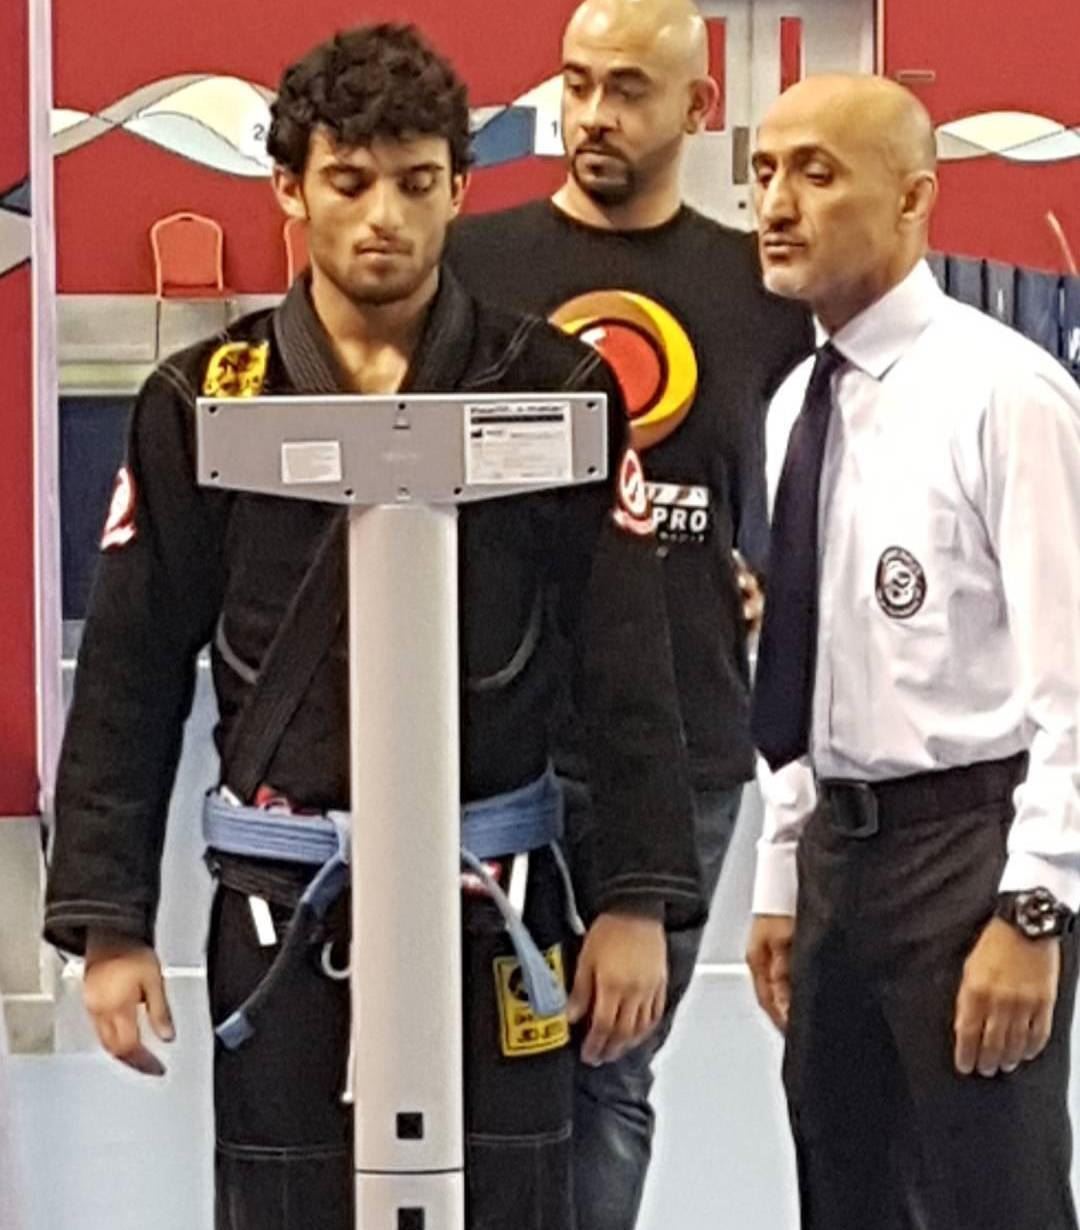 محمد الماجد اثناء الميزان لبطولة البحرين الدولية للجوجيتسو